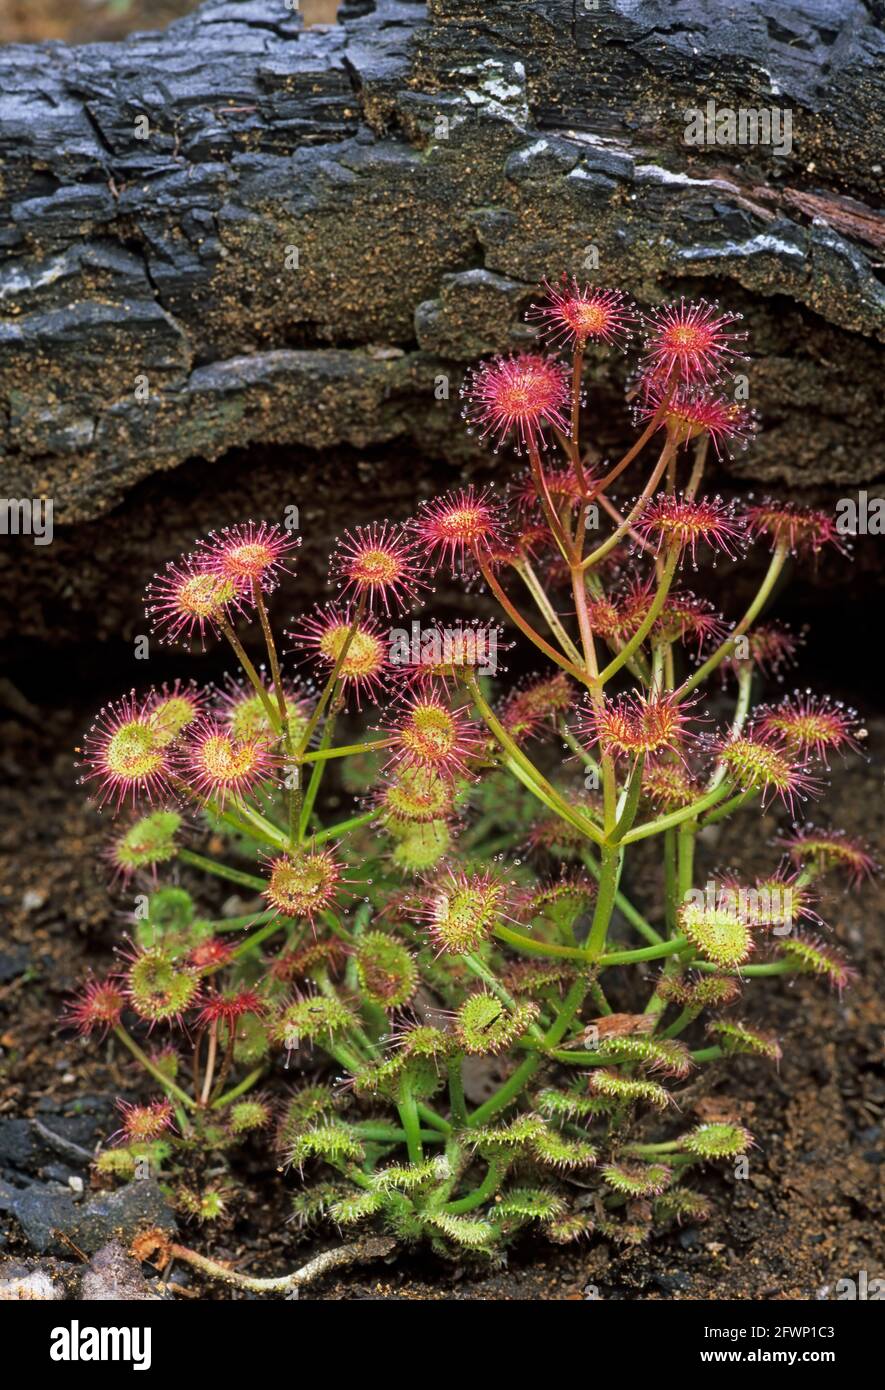 Le rossolis (Drosera) Insectiverous les espèces végétales du parc national de Stirling en Australie occidentale PL000688 Banque D'Images